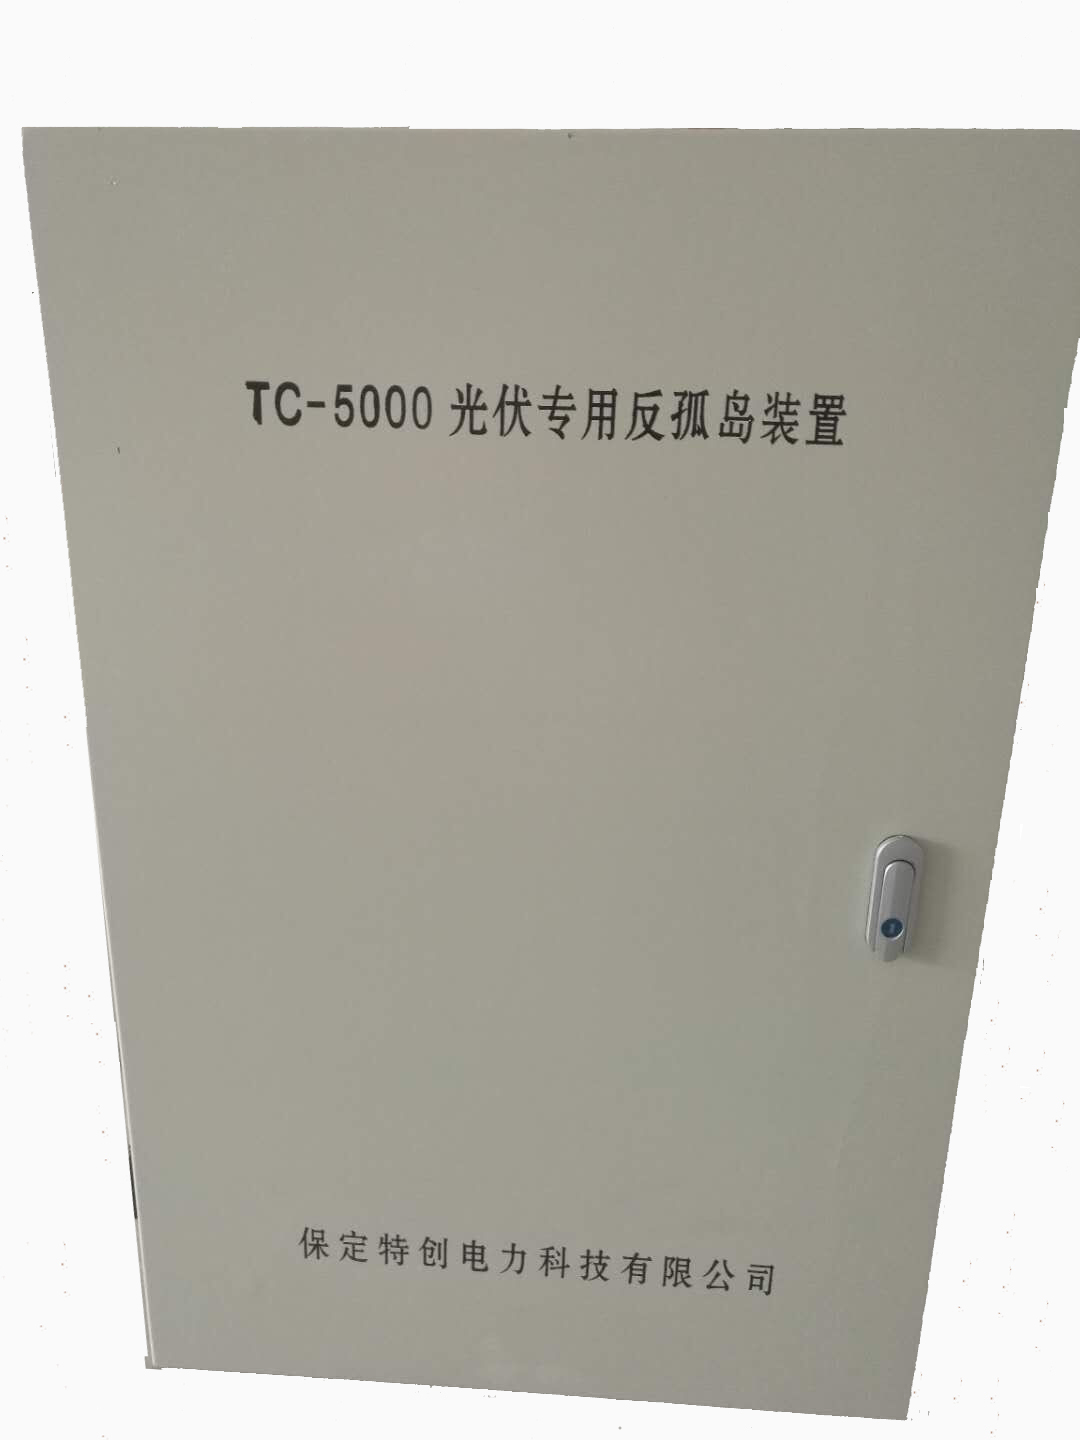 分布式光伏专用低压反孤岛装置TC-5000